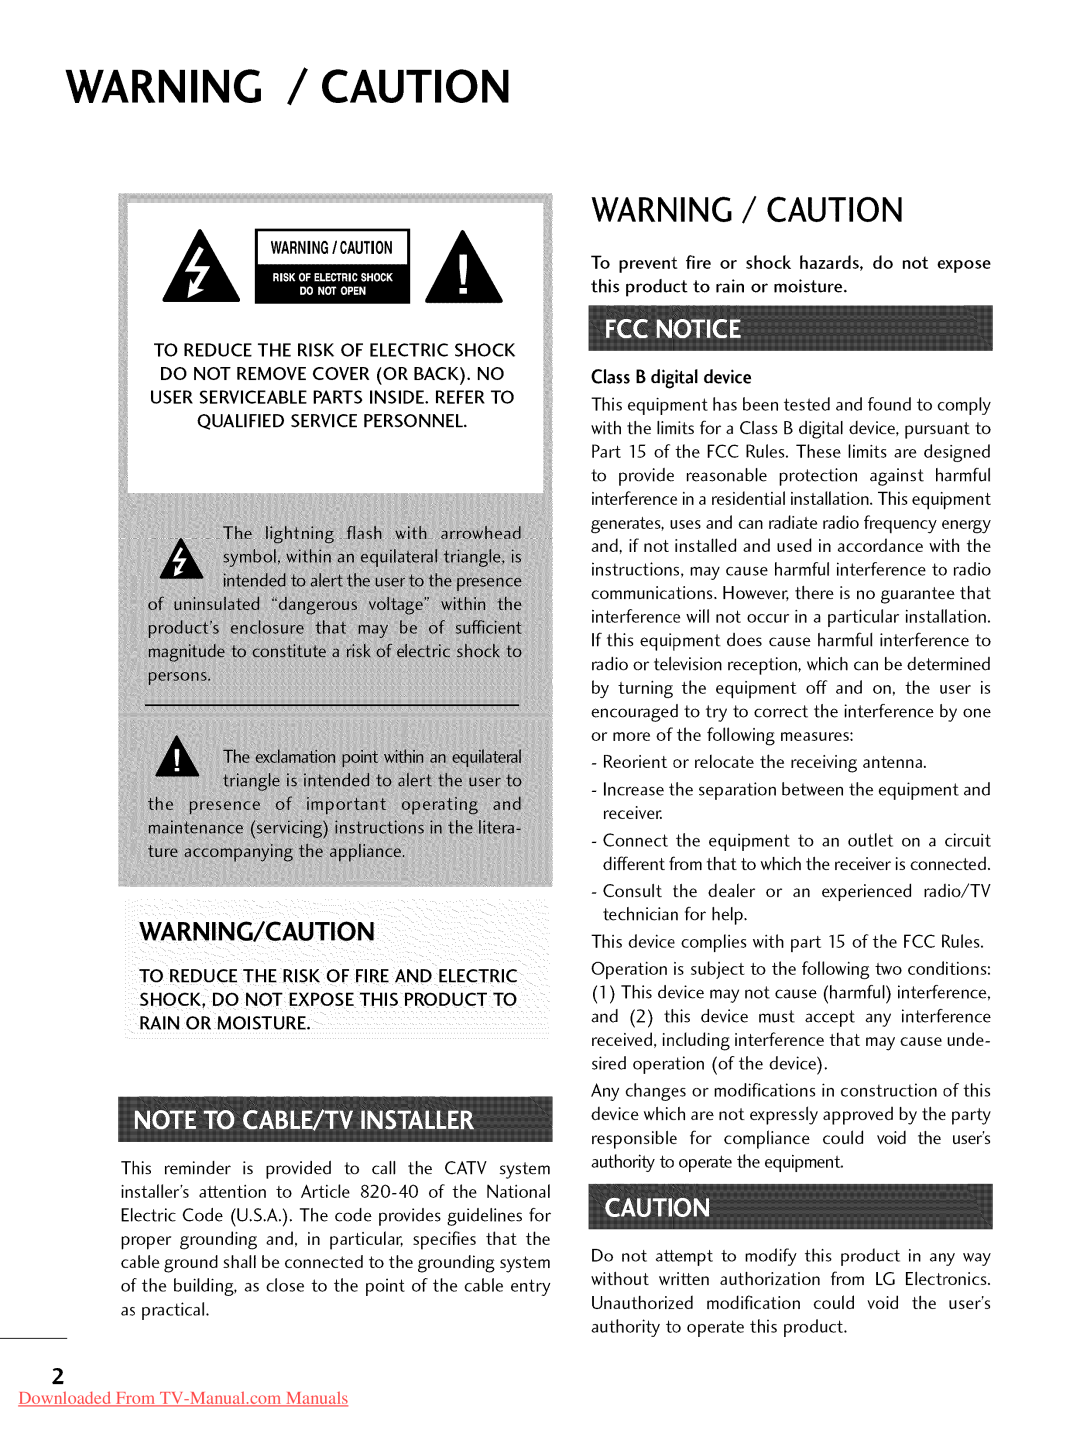 LG Electronics 47LD520, 32LD350, 47LD450, 47LD420, 37LD450, 32LD320 Warning / Caution, Downloaded From TV-Manual.com Manuals 